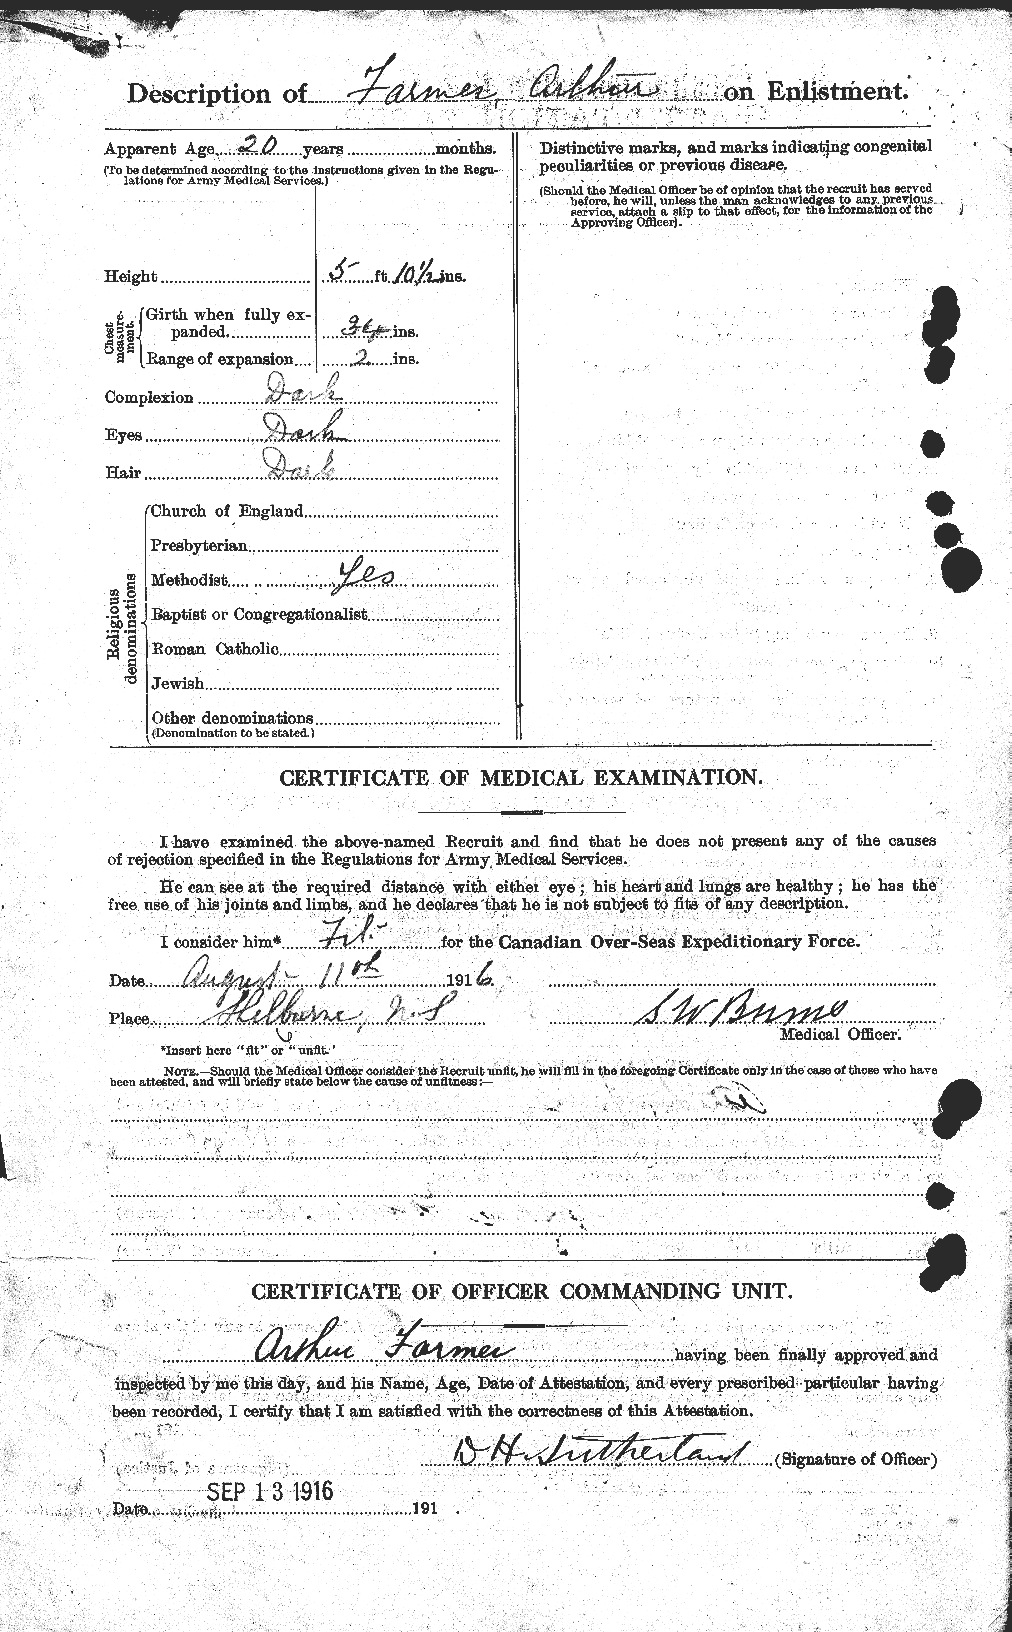 Dossiers du Personnel de la Première Guerre mondiale - CEC 317934b